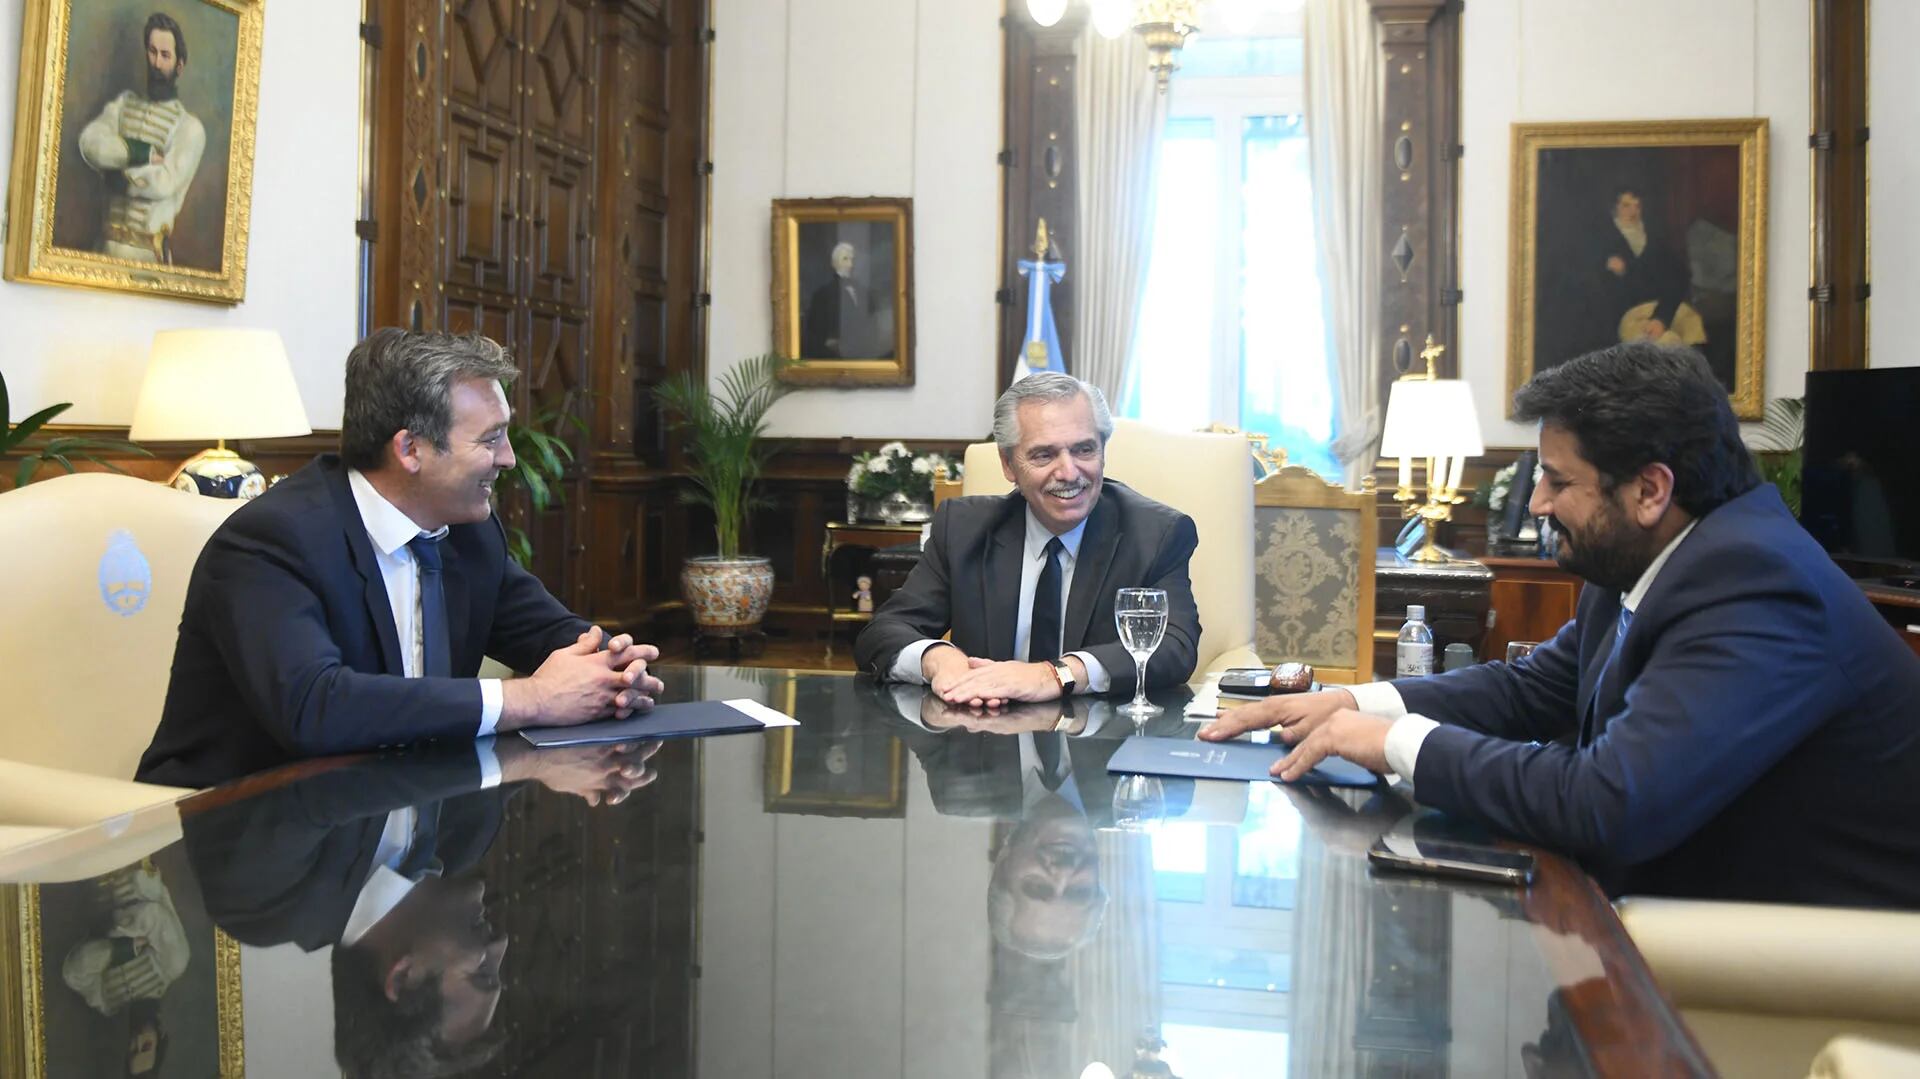 Alberto Fernández with Martín Soria and Juan Martín Mena